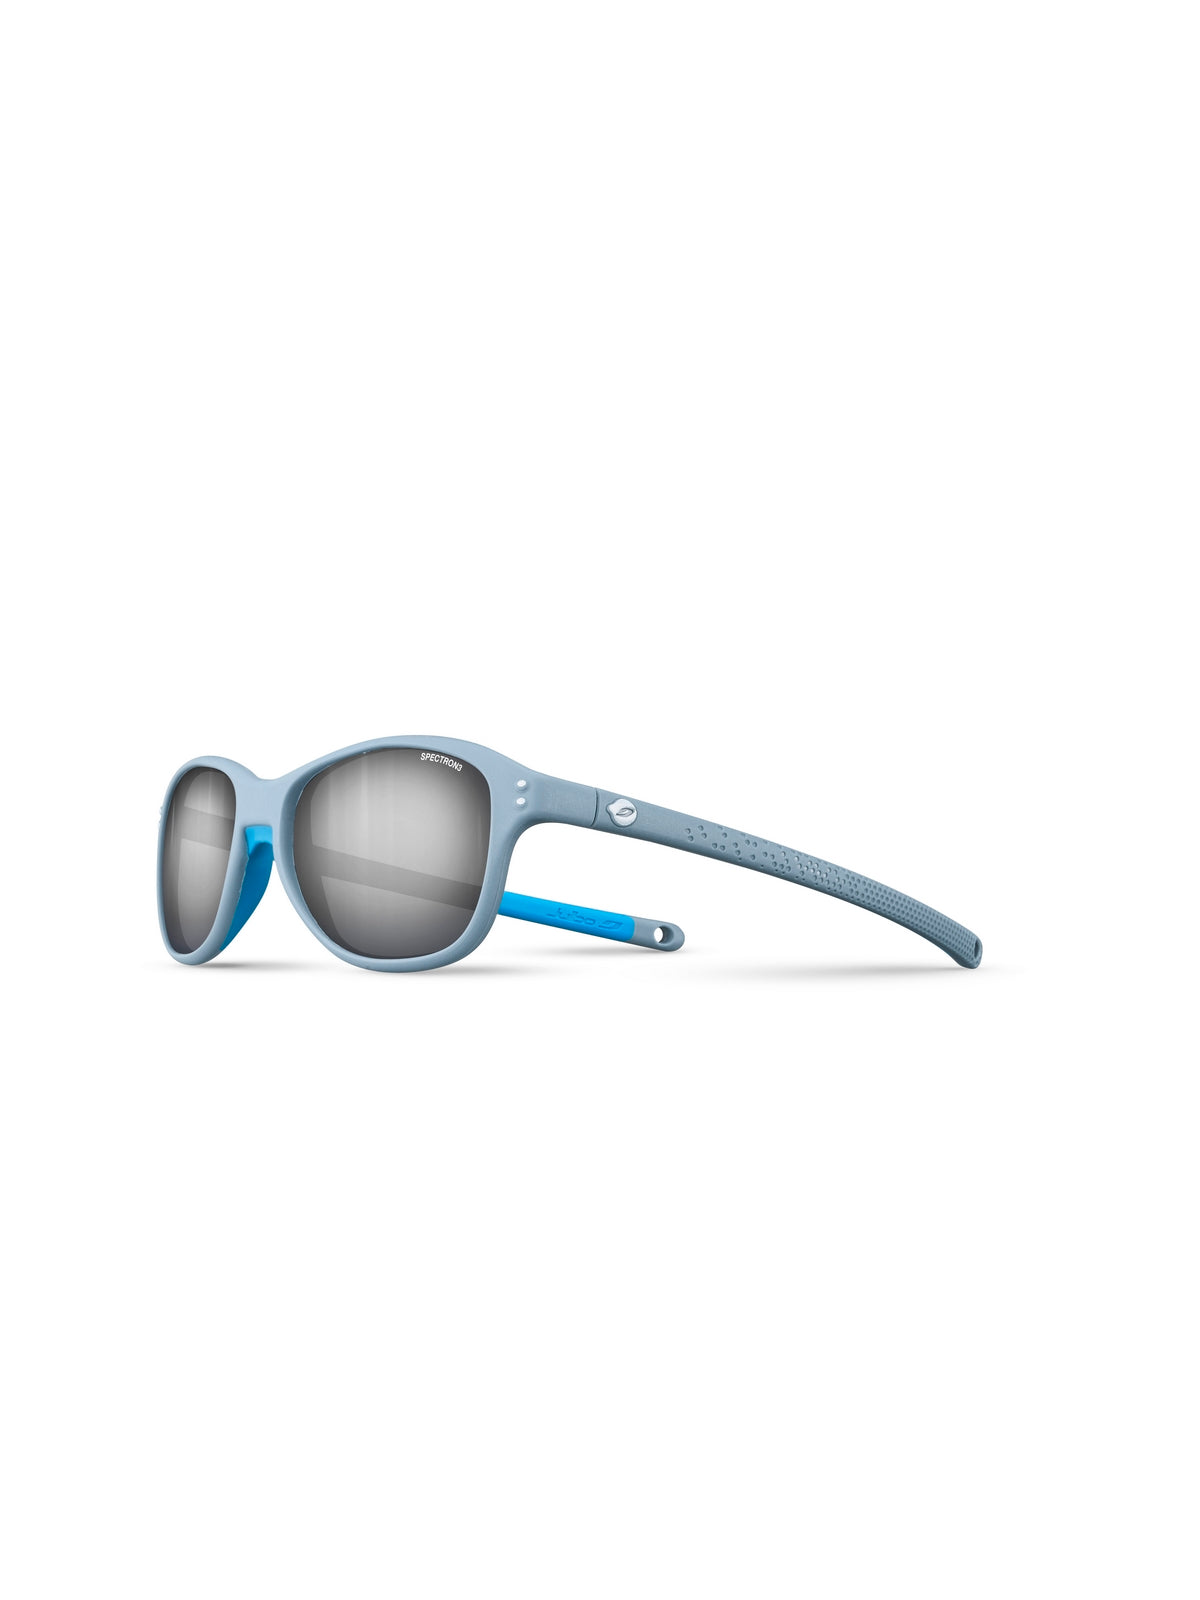 Okulary przeciwsłoneczne Julbo Boomerang - matowy szary / Light niebieski| Spectron 3+